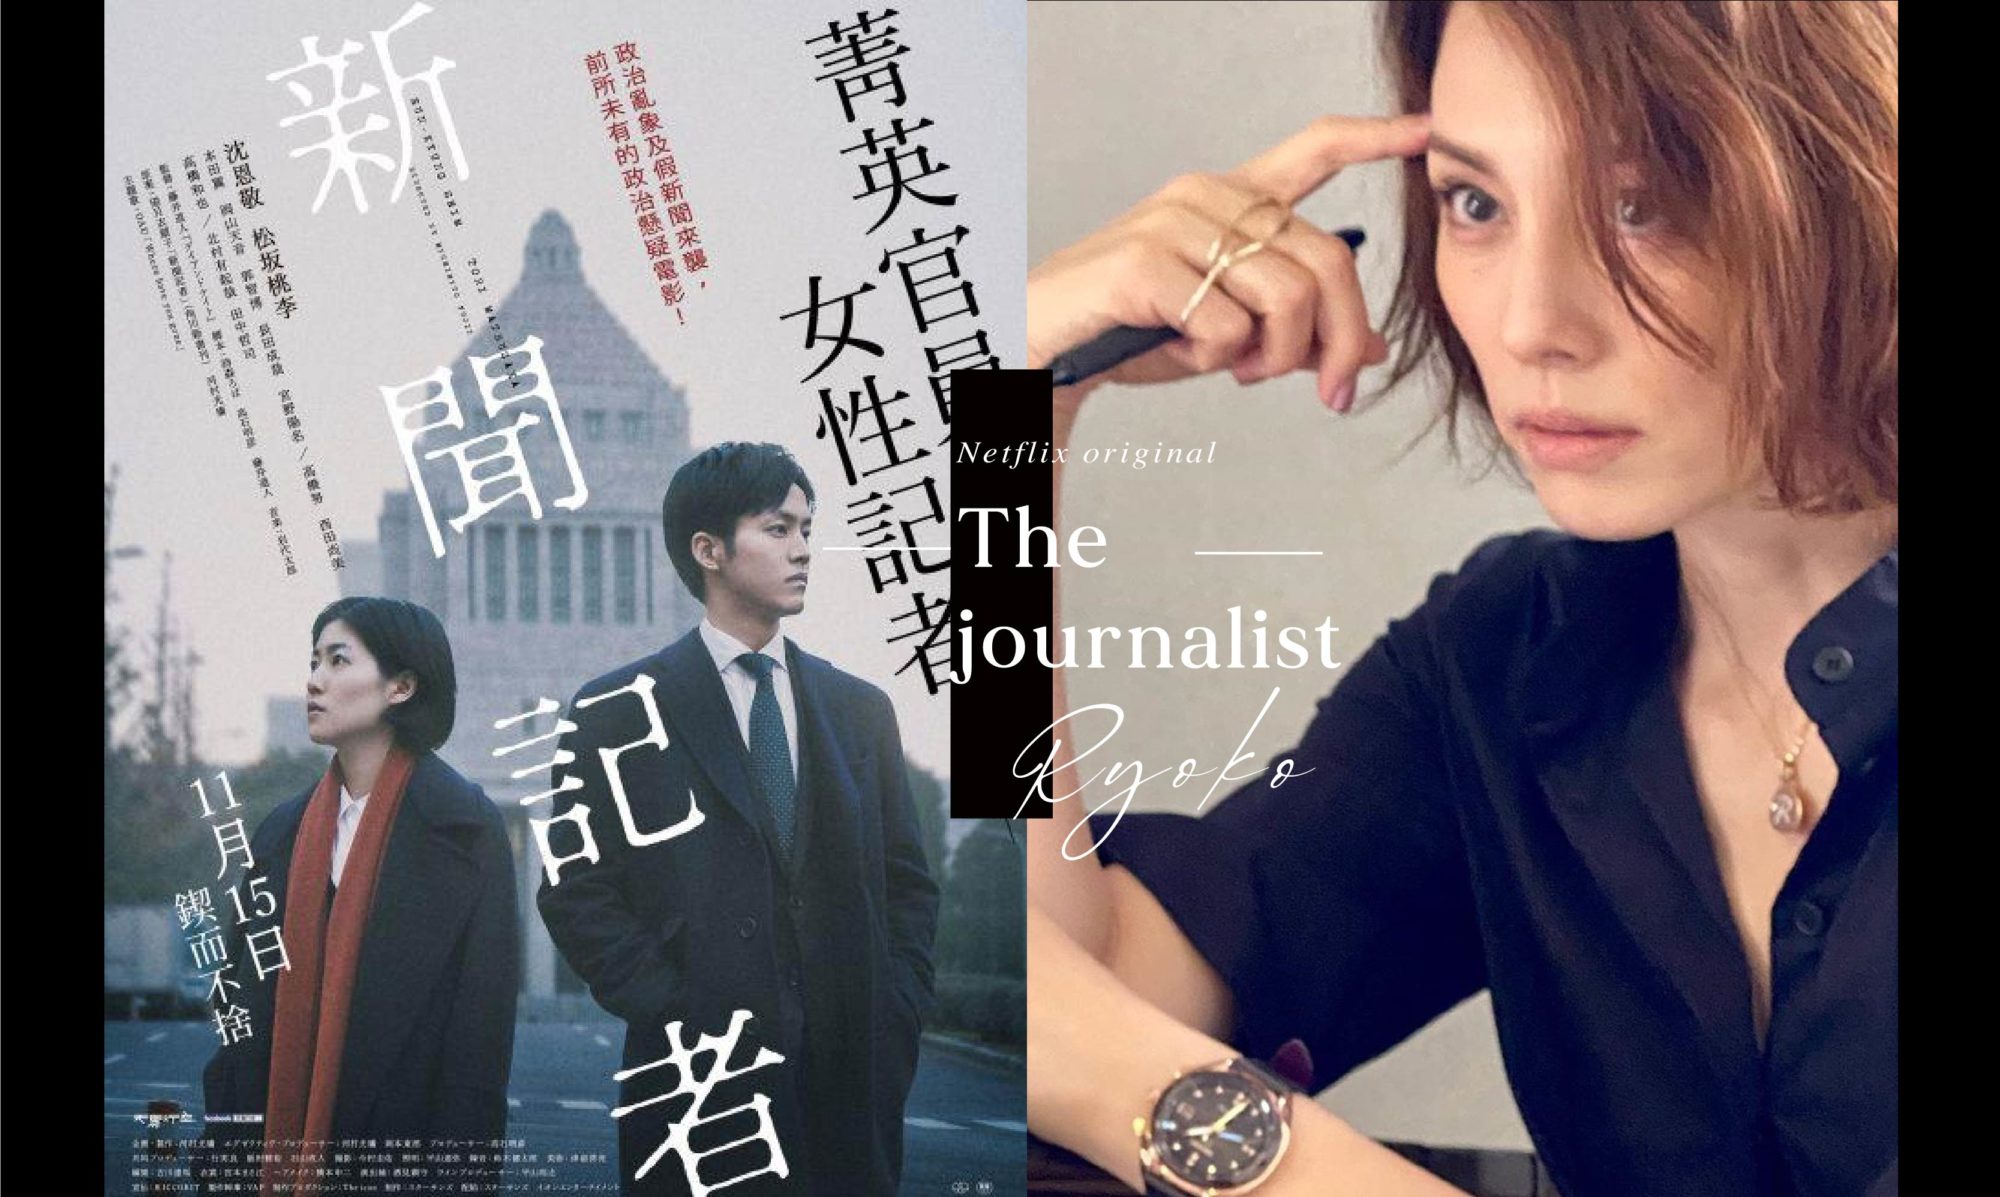 同名暢銷小說加上米倉涼子 最衝擊的演出 Netflix 新劇 新聞記者 不追嗎 A Day Magazine